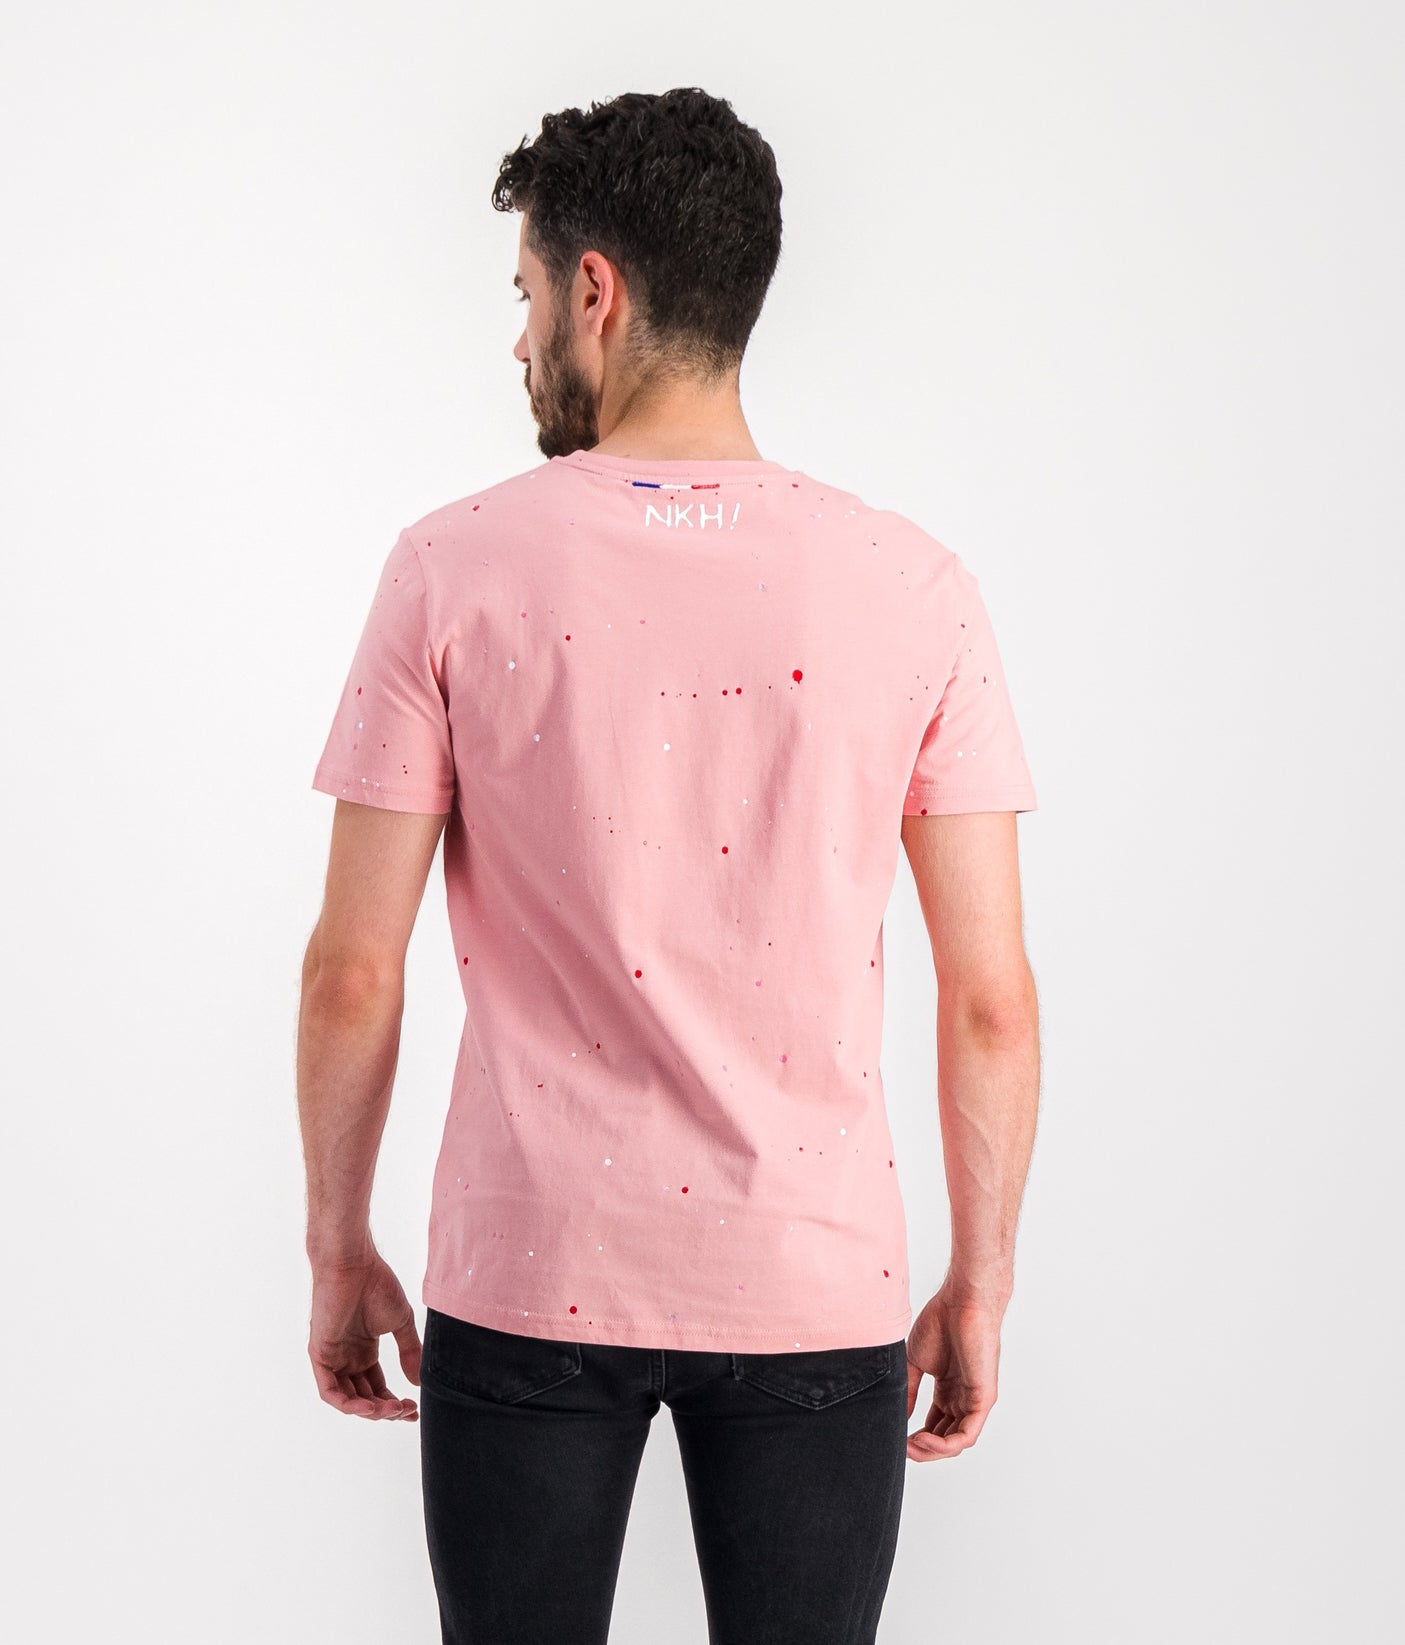 Tee-shirt rose foncé - Ceci n'est pas un Chanel